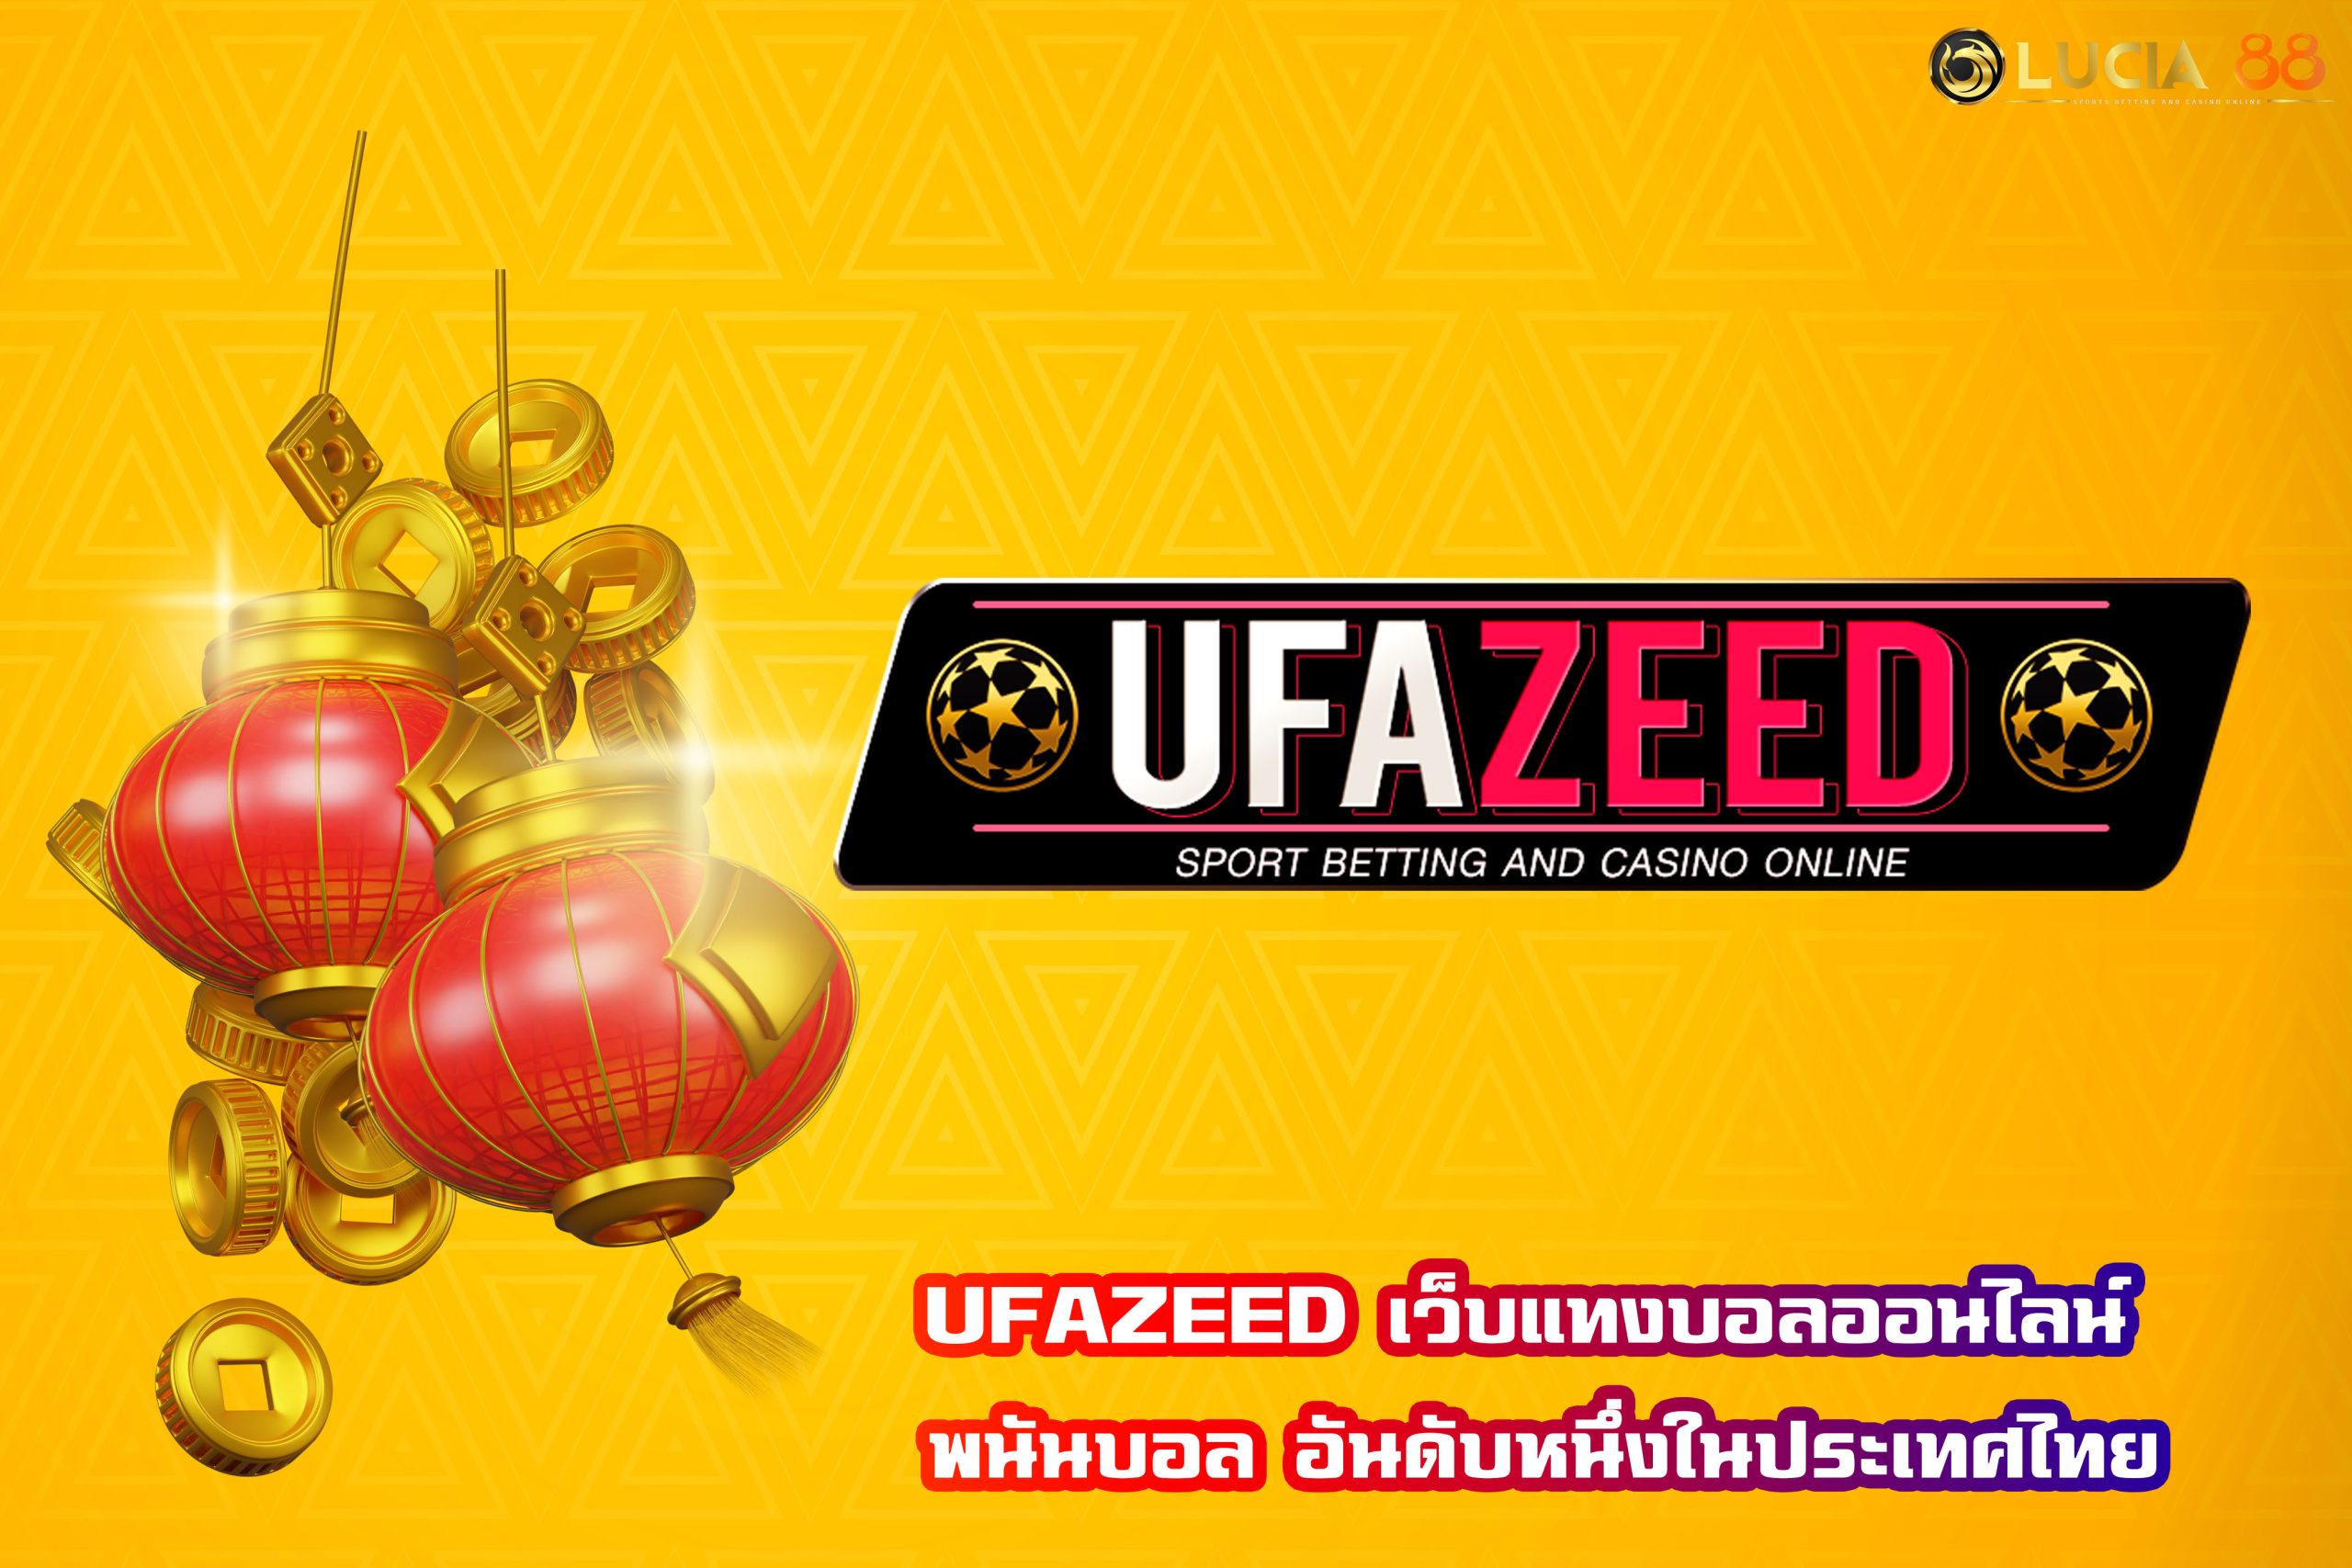 UFAZEED เว็บแทงบอลออนไลน์ พนันบอล อันดับหนึ่งในประเทศไทย